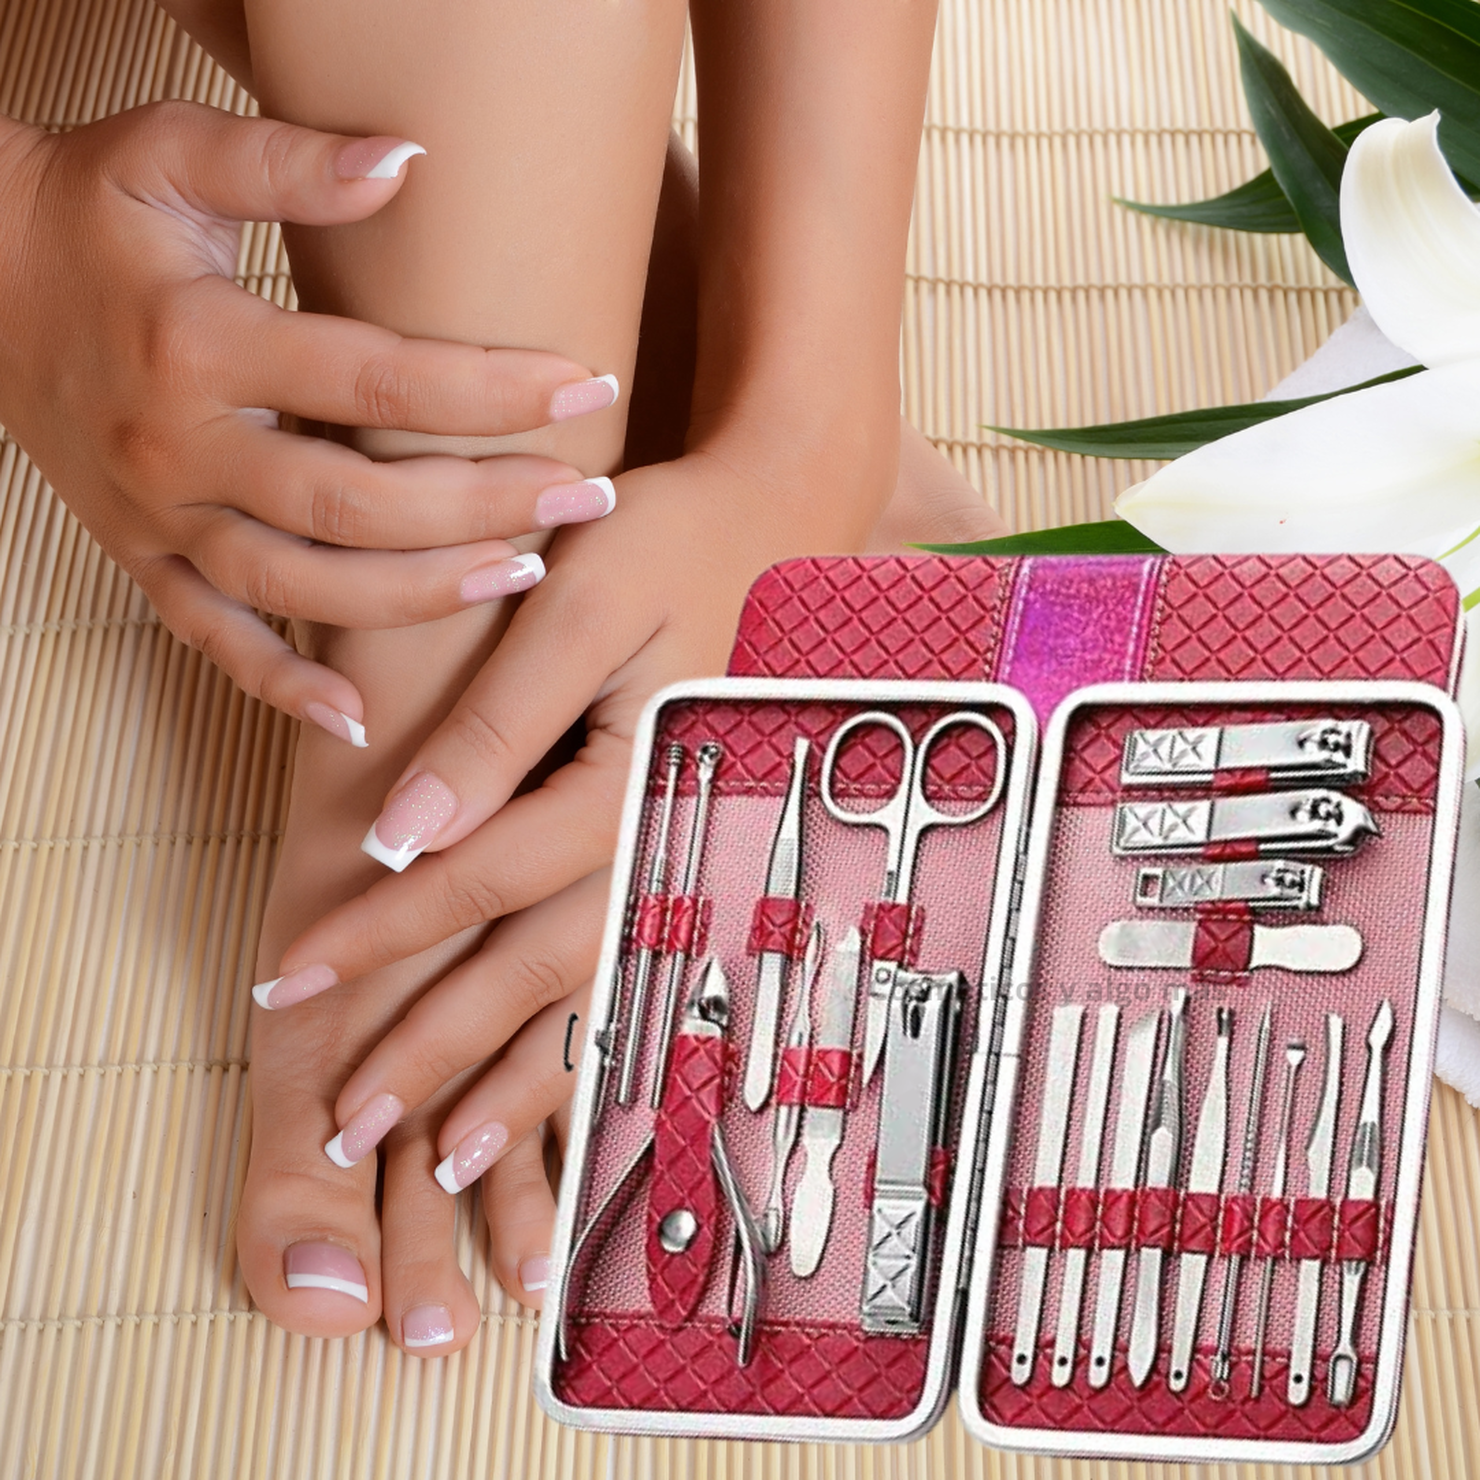 versus Excelente oler Set completo de 21 herramientas para Manicure y pedicure | Paris.cl